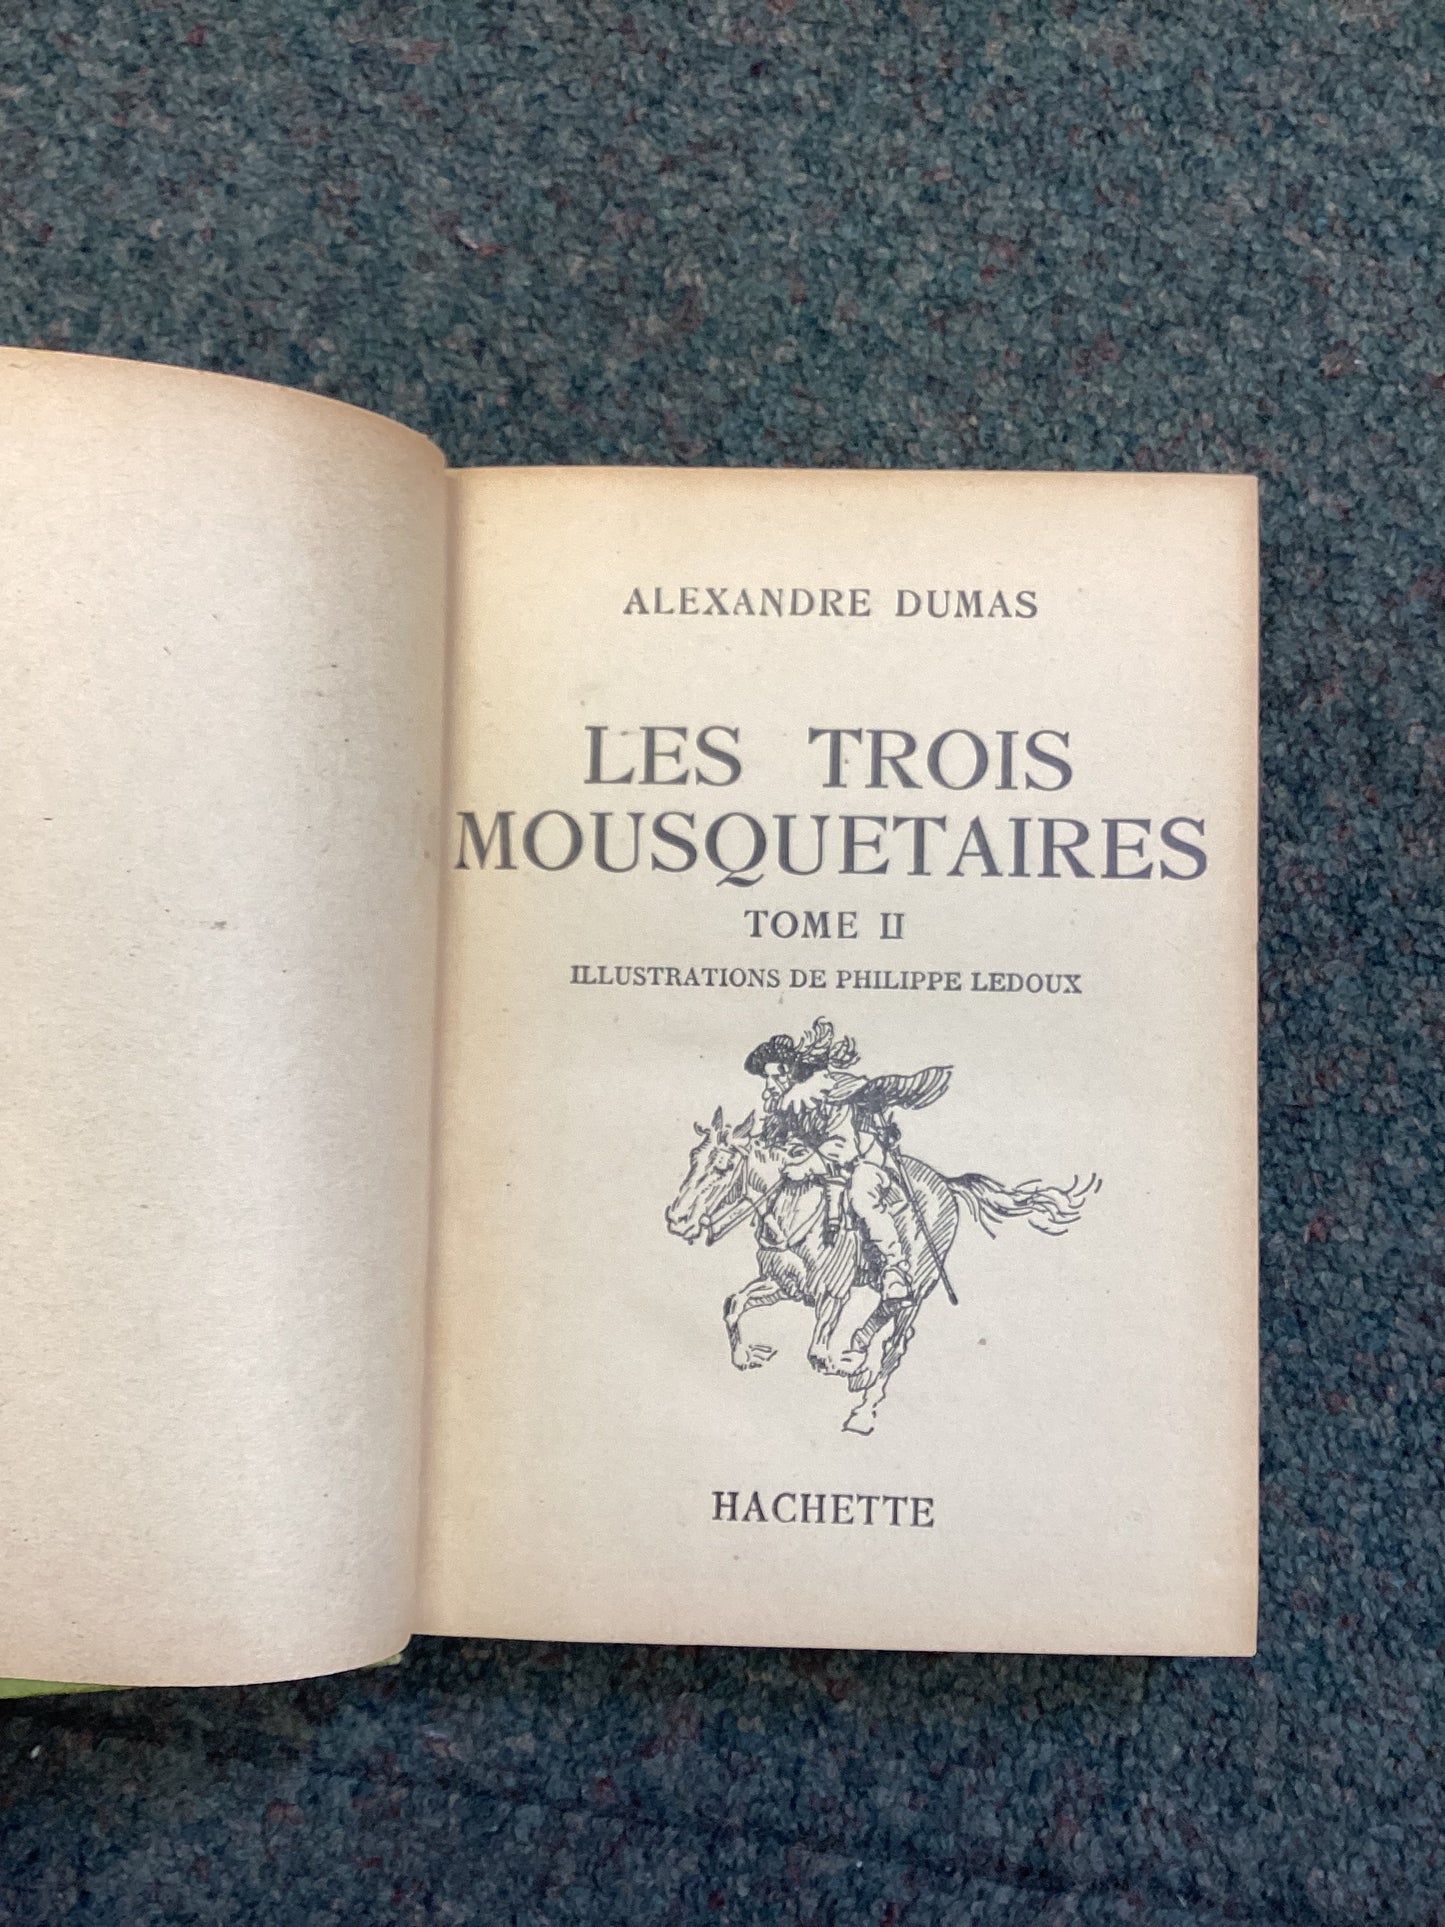 Les Trois Mousquetaires Tome II, Alexandre Dumas, Hardback, Hachette 1950